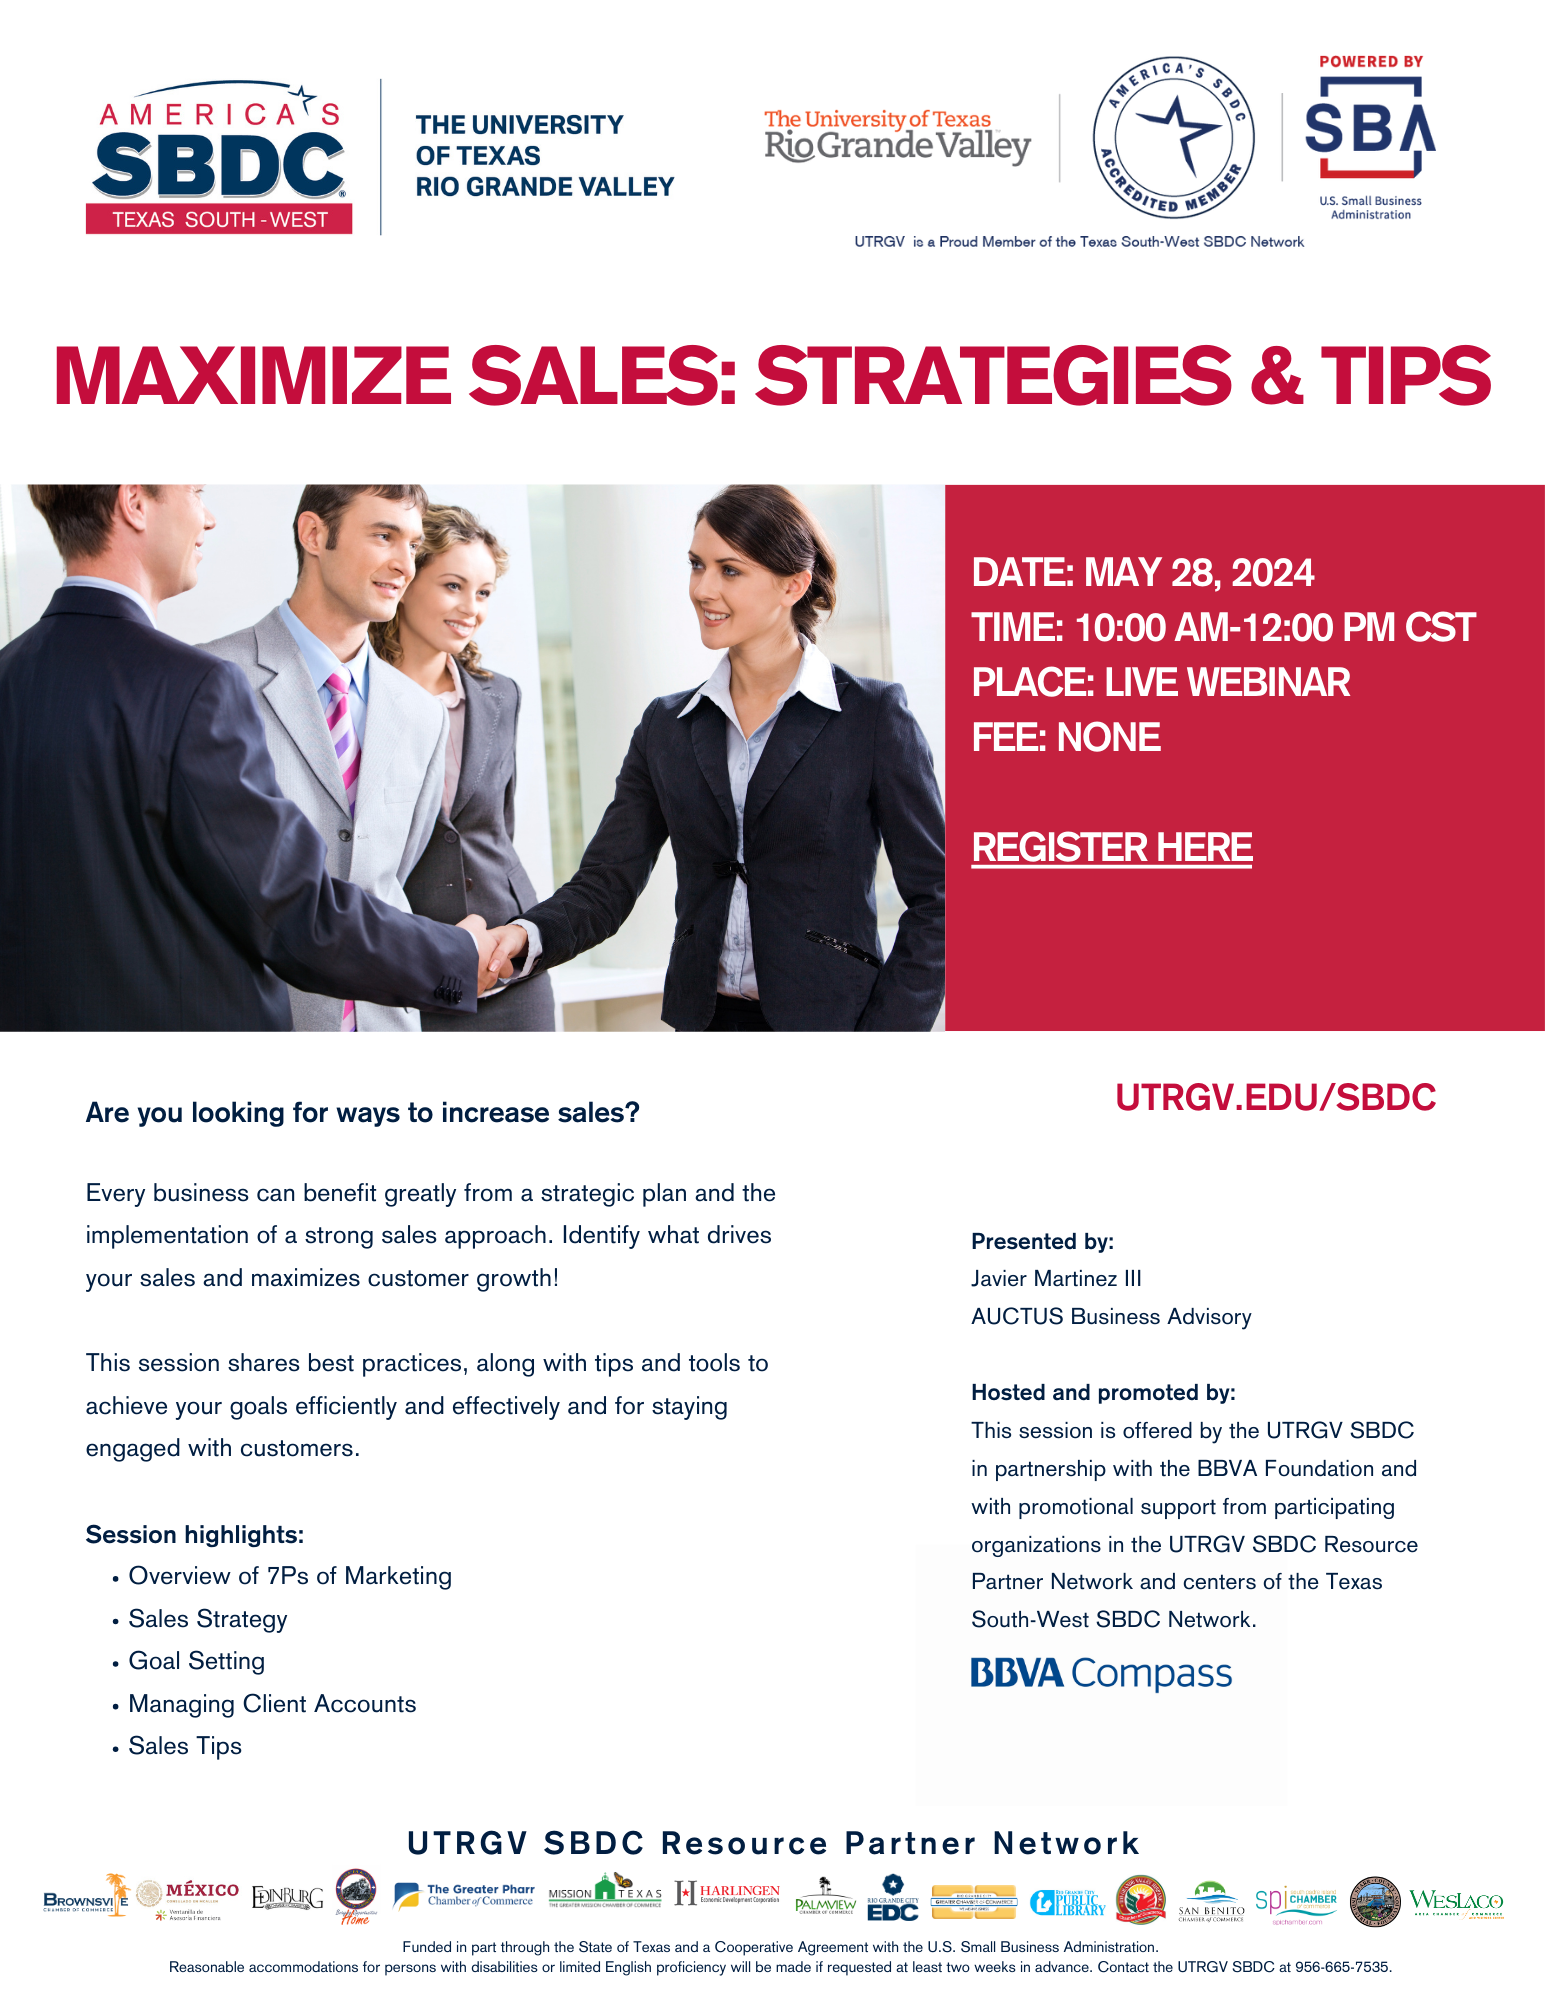 Maximize Sales Workshop: Unlock Your Business Potential